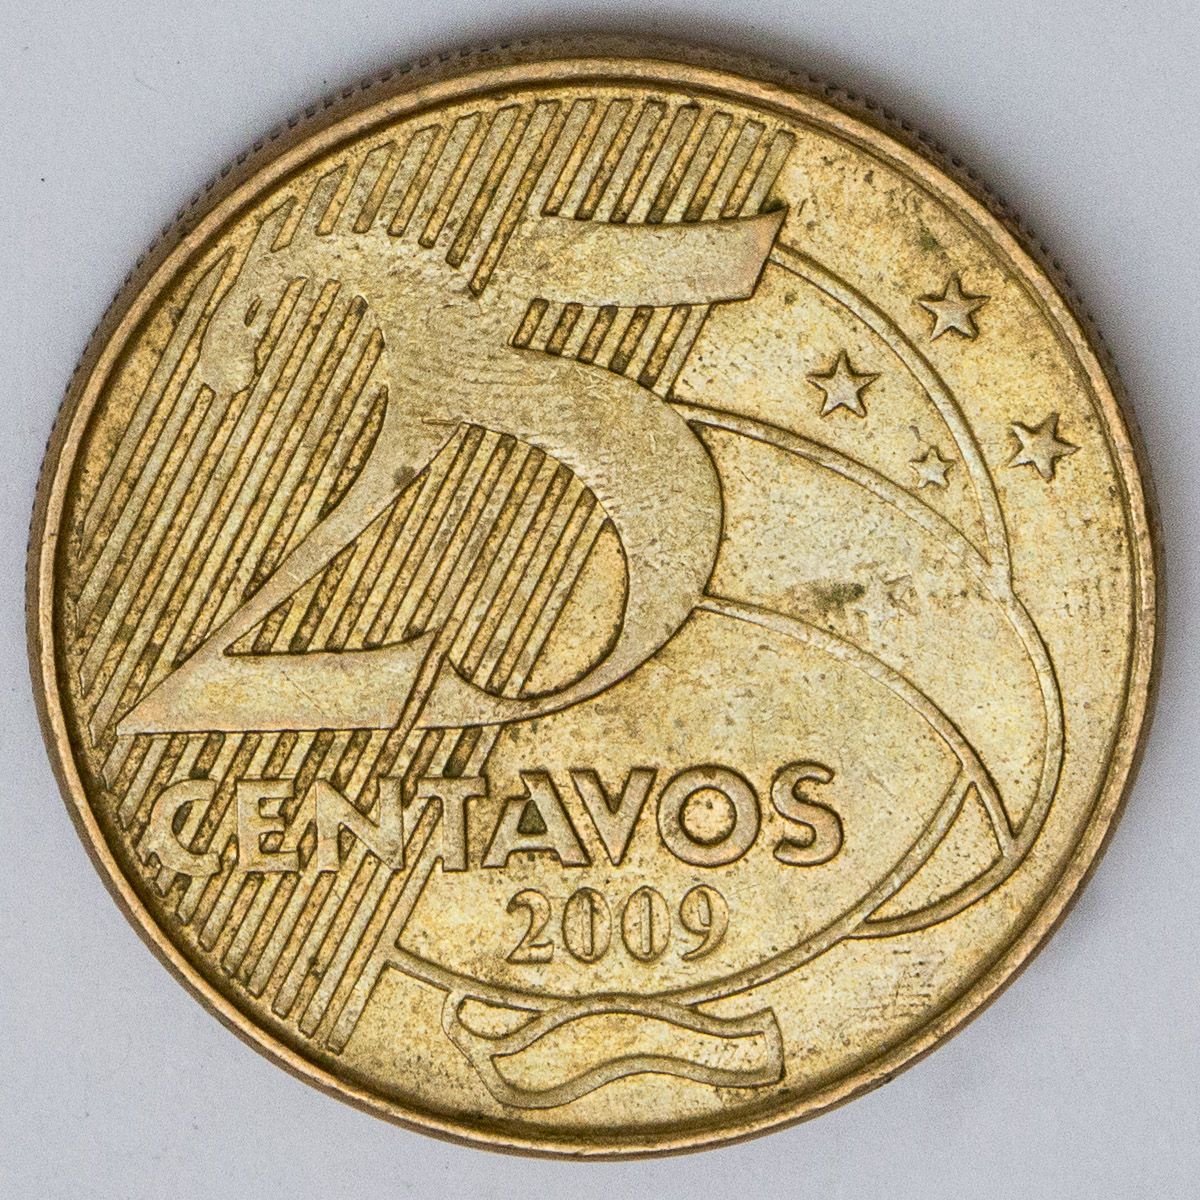 Moeda de 25 centavos de 2009